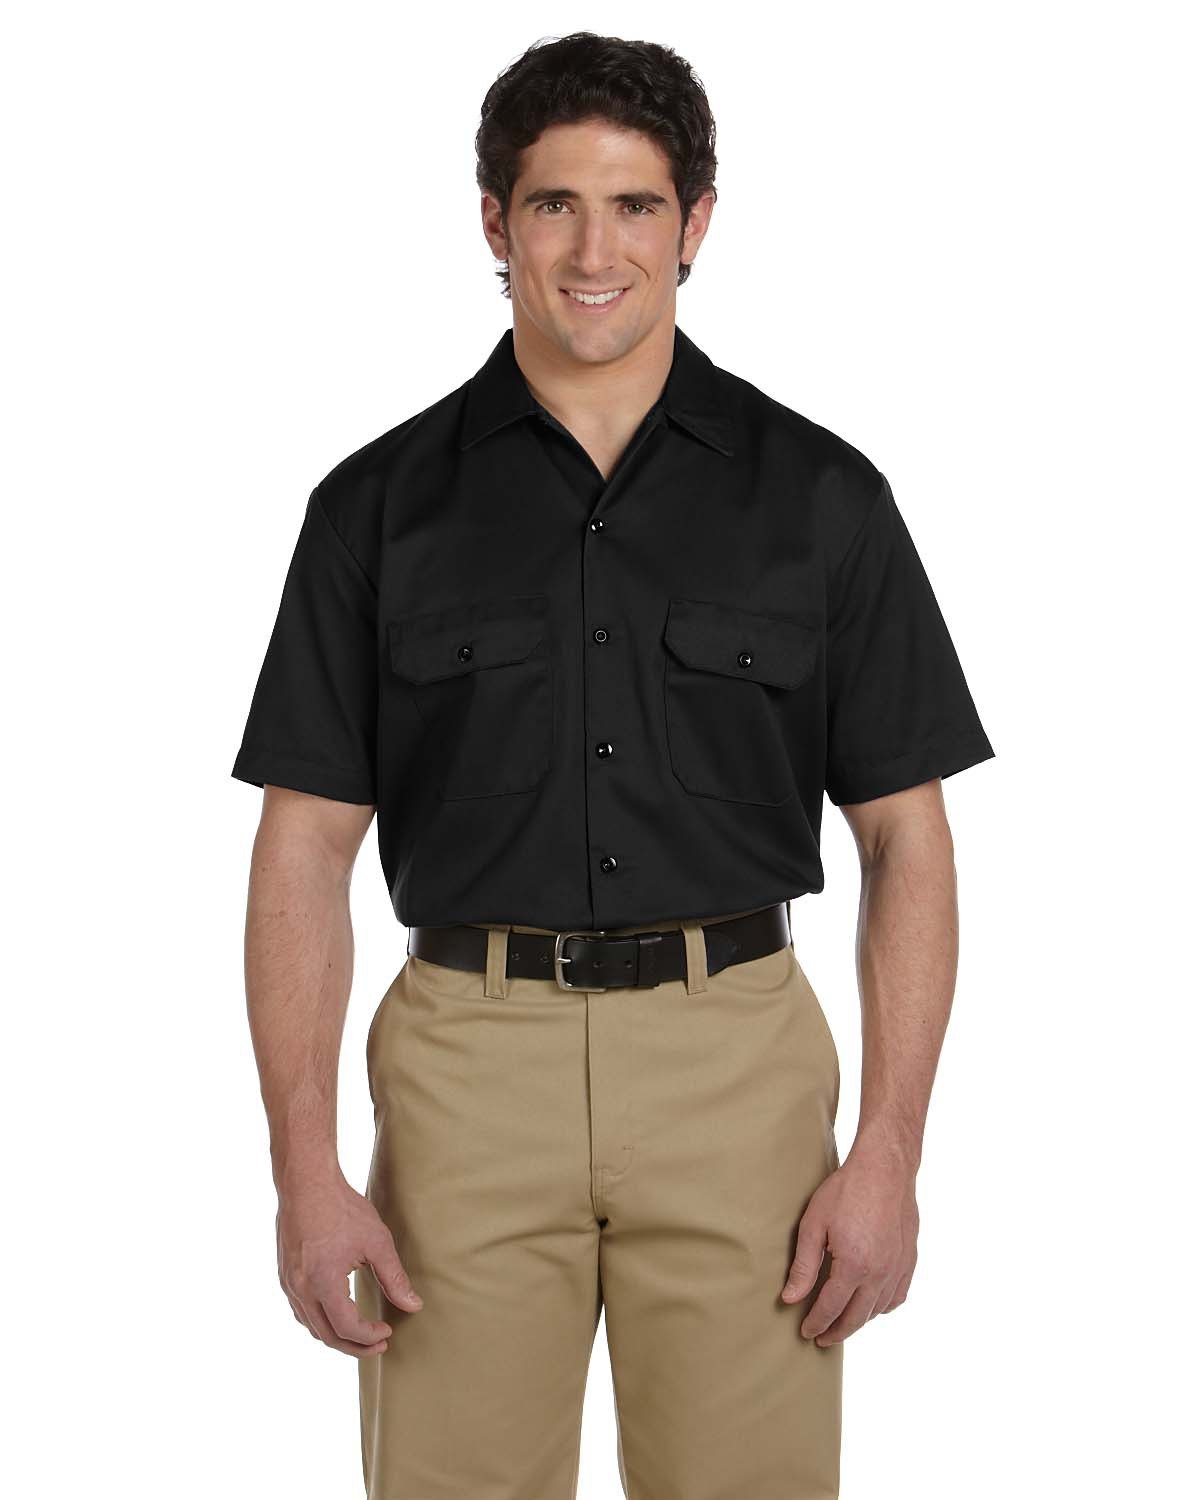 Men's Short-Sleeve Work Shirt - 1574